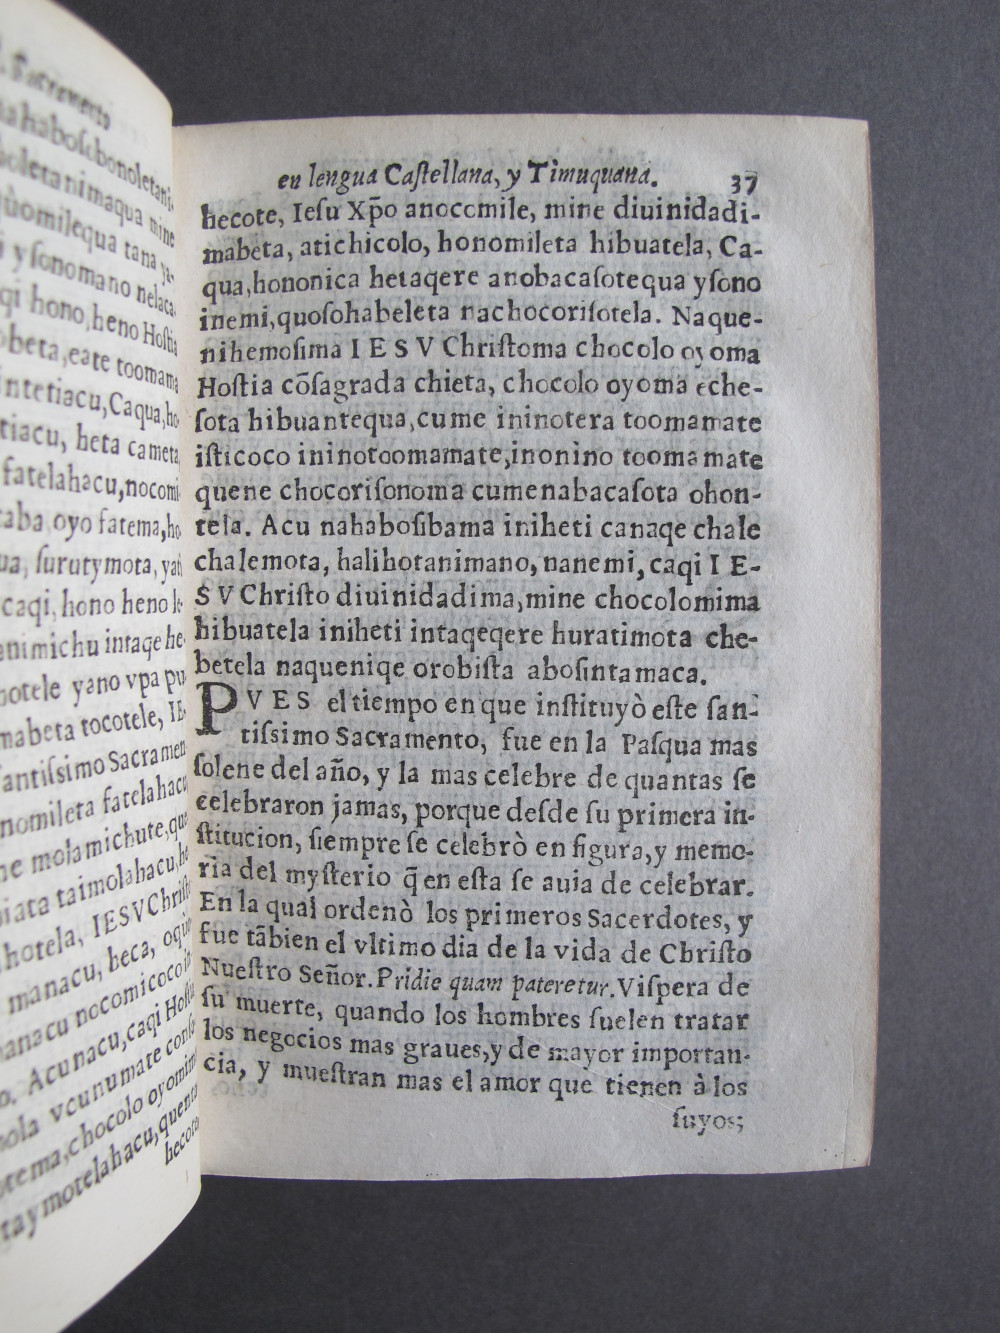 Folio E8 recto